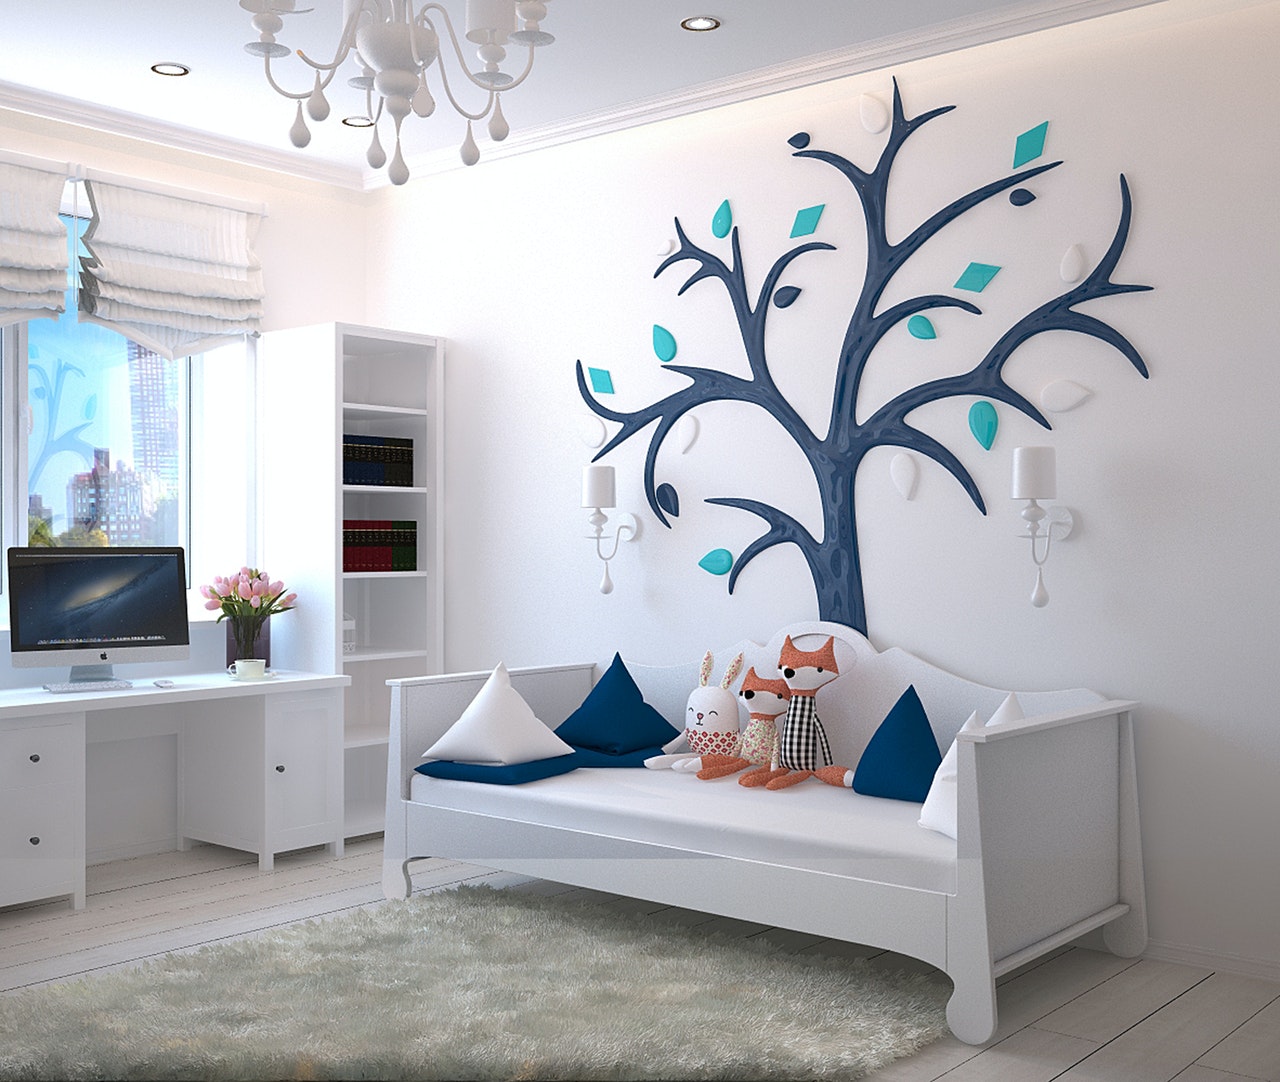 Jak urządzić pokój dziecięcy? Pomysły na dekoracje | LosokaWood.com